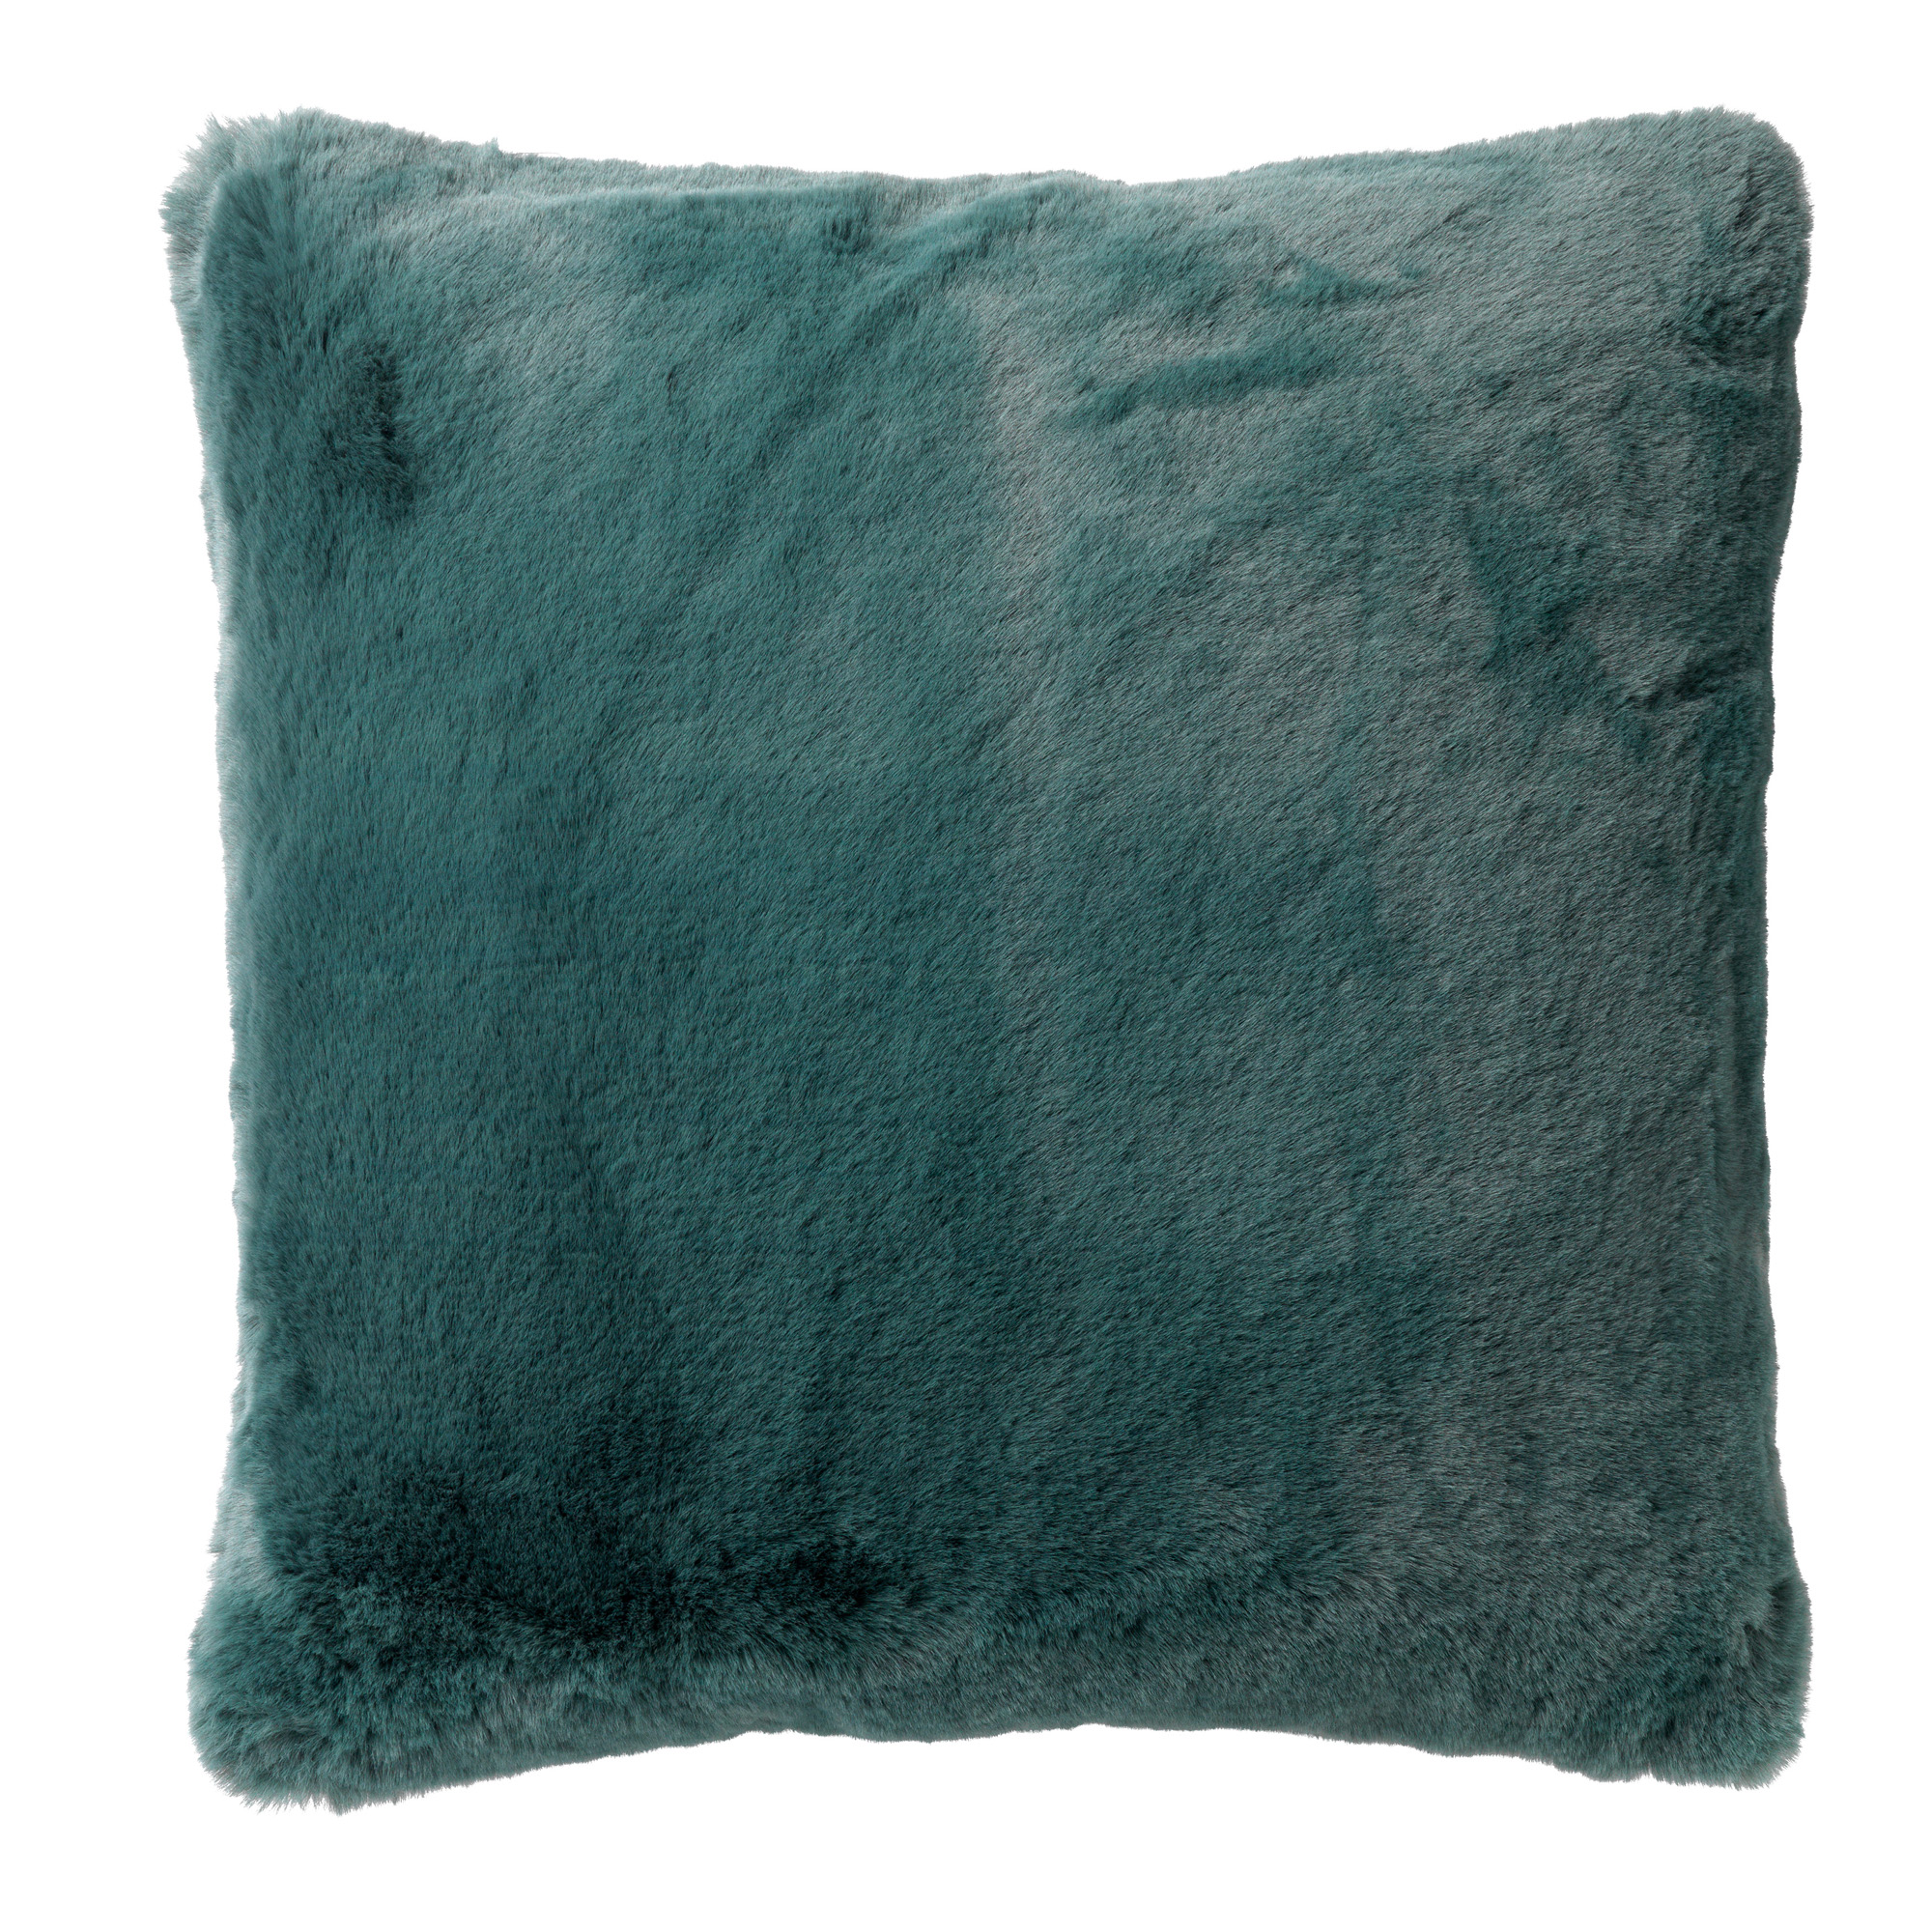 ZAYA - Cushion 45x45 cm Sagebrush Green - green